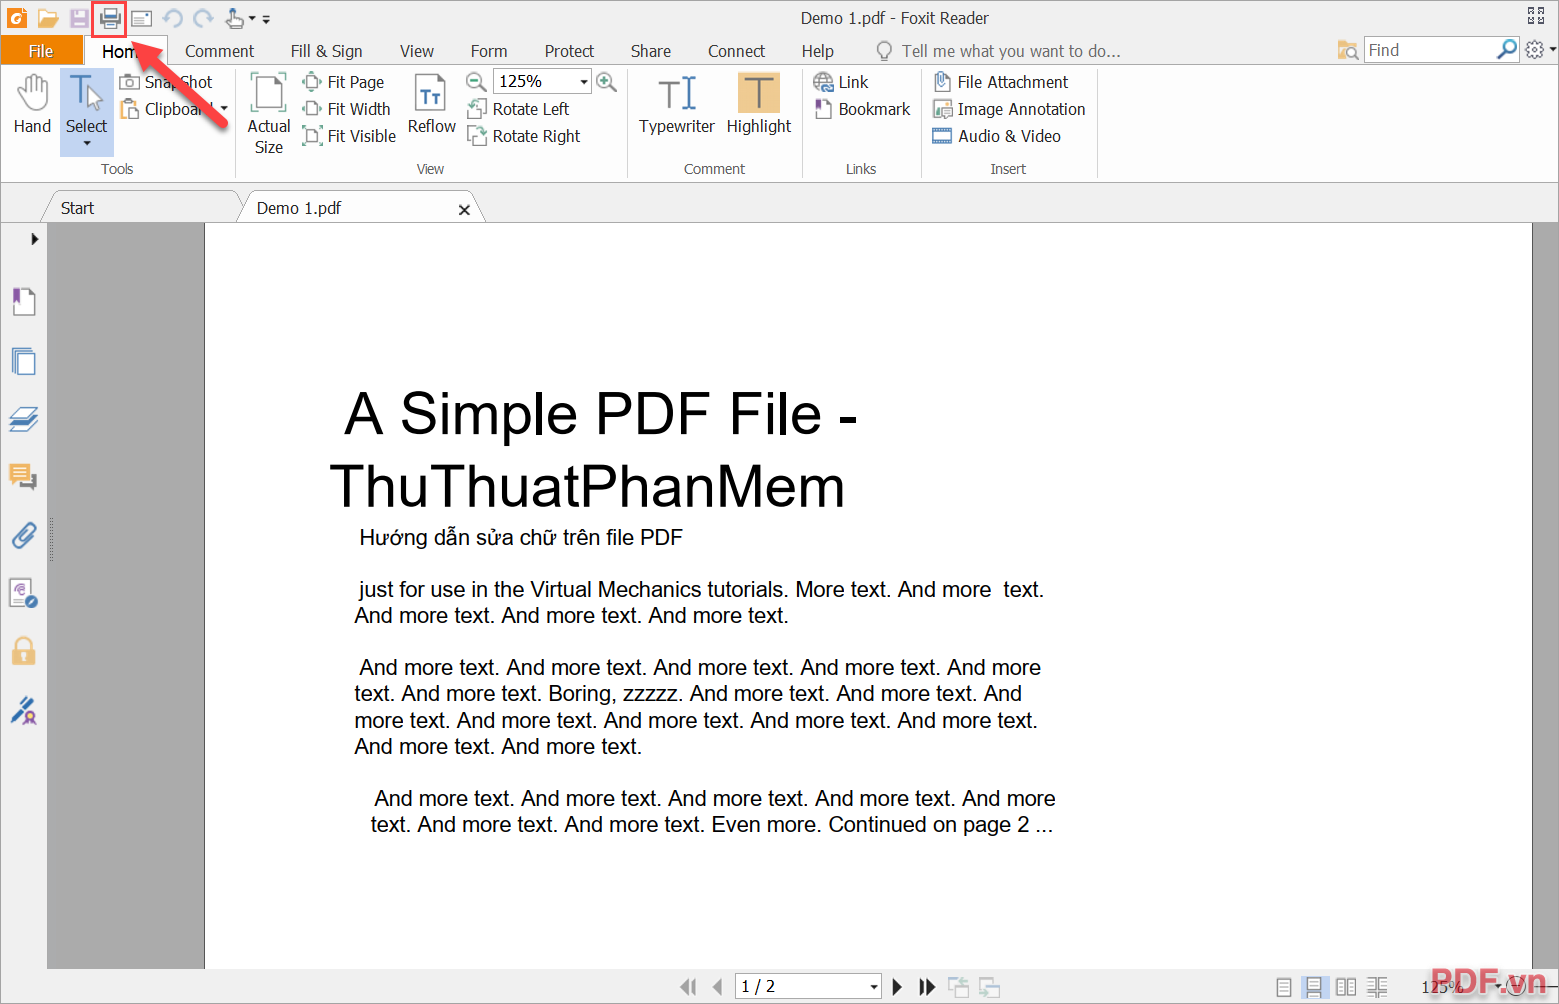 Cách cắt trang PDF bằng Foxit Reader hoàn toàn miễn phí